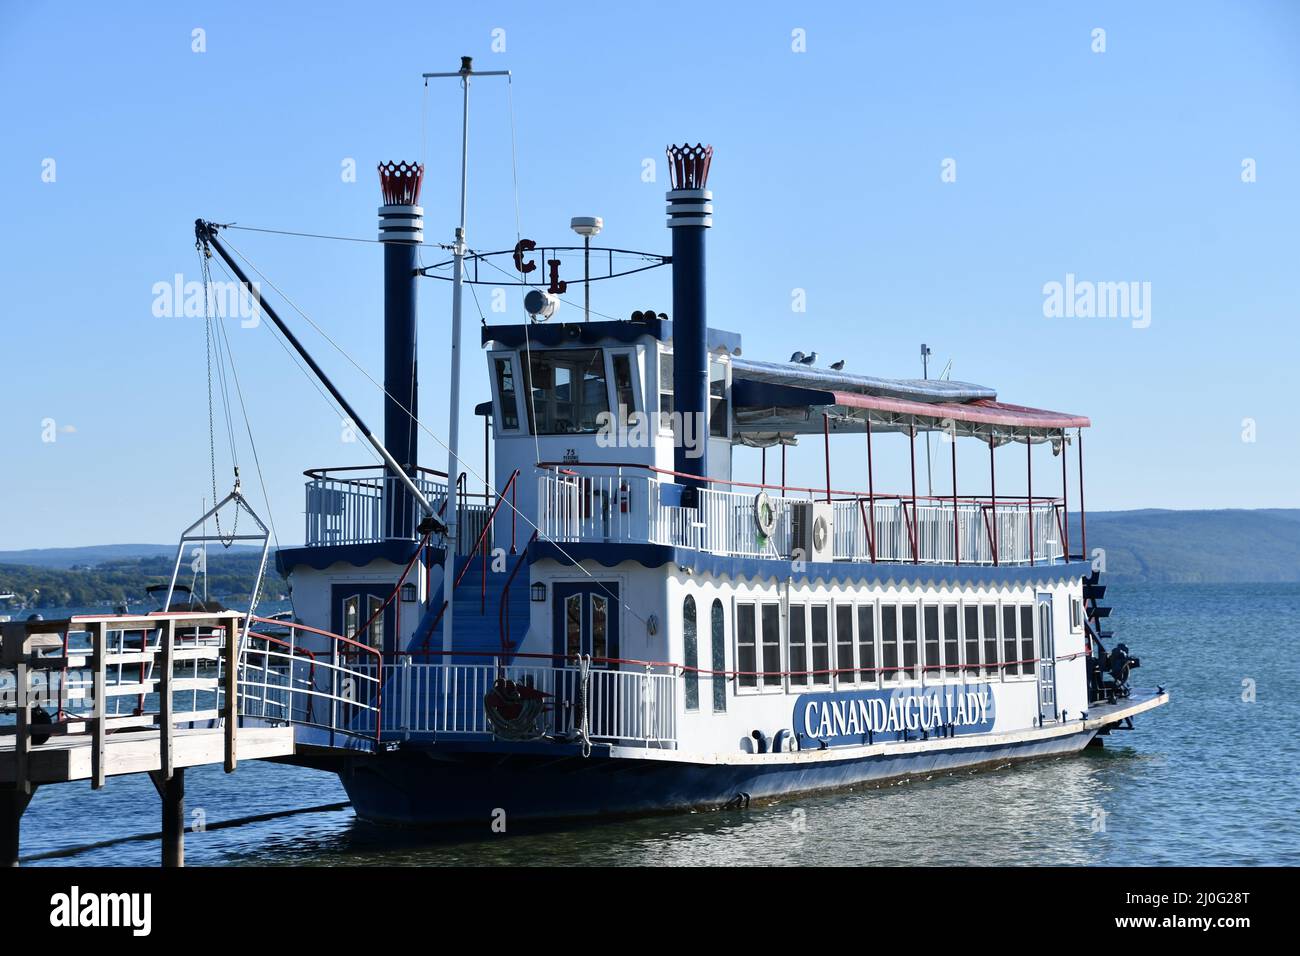 La barca da crociera Canandaigua Lady sul lago Canandaigua nello stato di New York Foto Stock